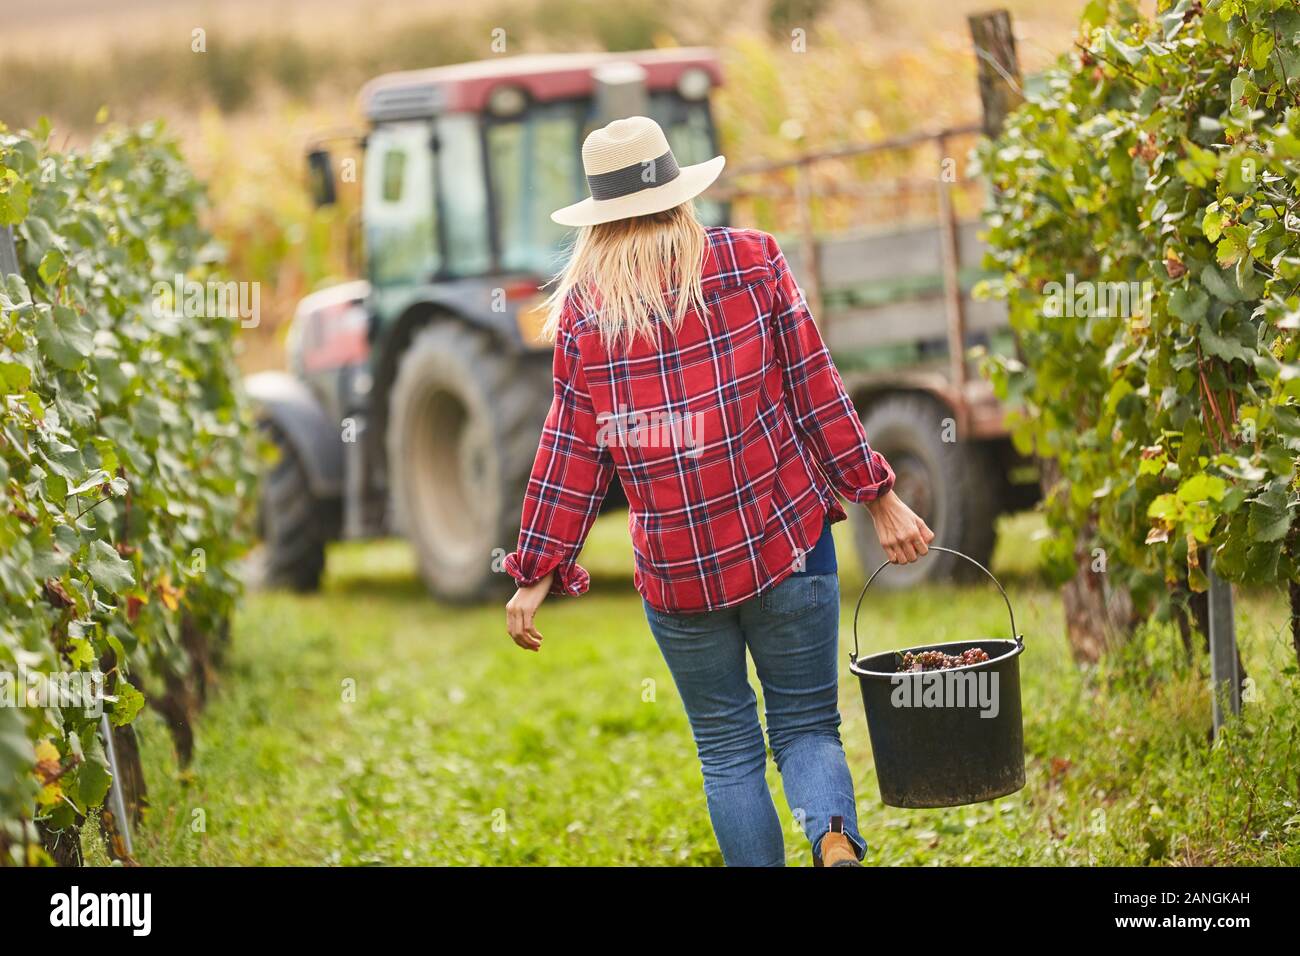 Junge Frau als Ernte Assistant mit einem Eimer Trauben Ernte Weintrauben Stockfoto